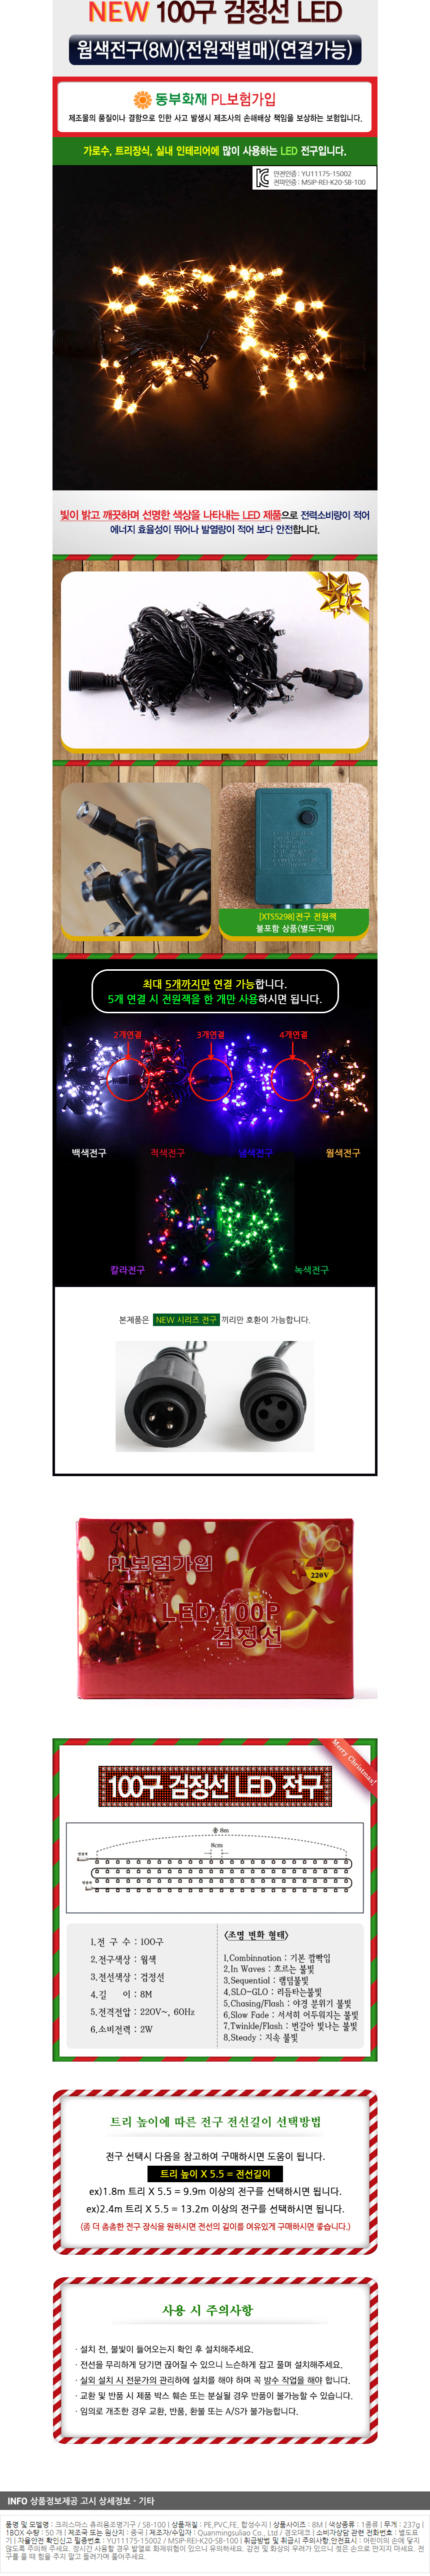 [크리스마스장식]100구 검정선 LED 웜색전구(8M) (전원잭별매) (연결가능) (150cm∼500cm트리용)/트리전구